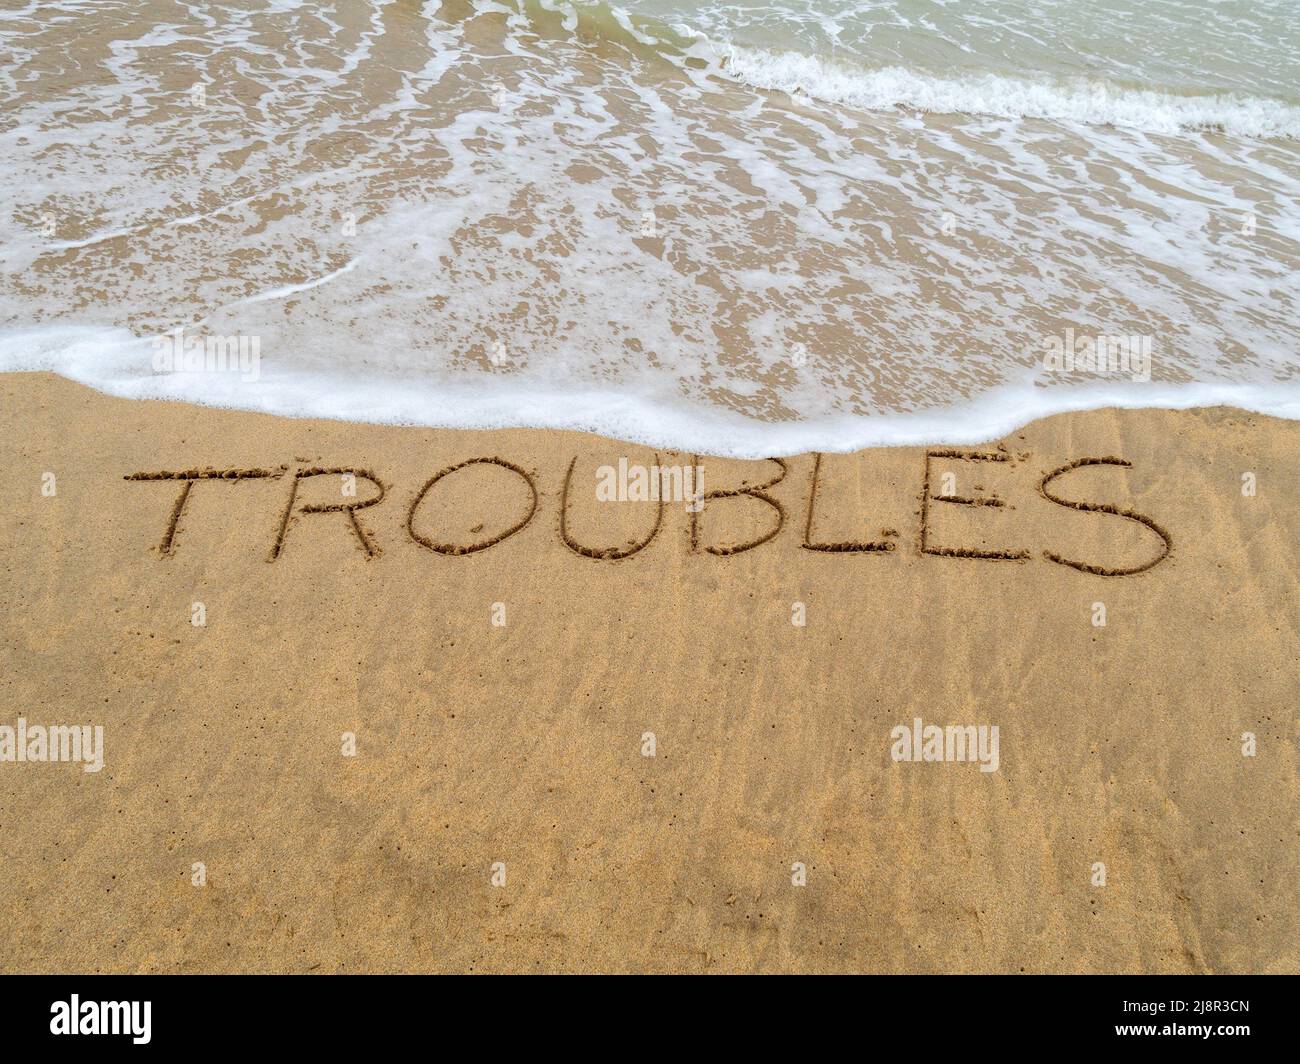 Konzeptbild - um Stress abzuwaschen, indem man einen Urlaub macht, während die Wellen an einem Sandstrand das Wort „Probleme“, das in Sand geschrieben ist, wegspülen. Stockfoto